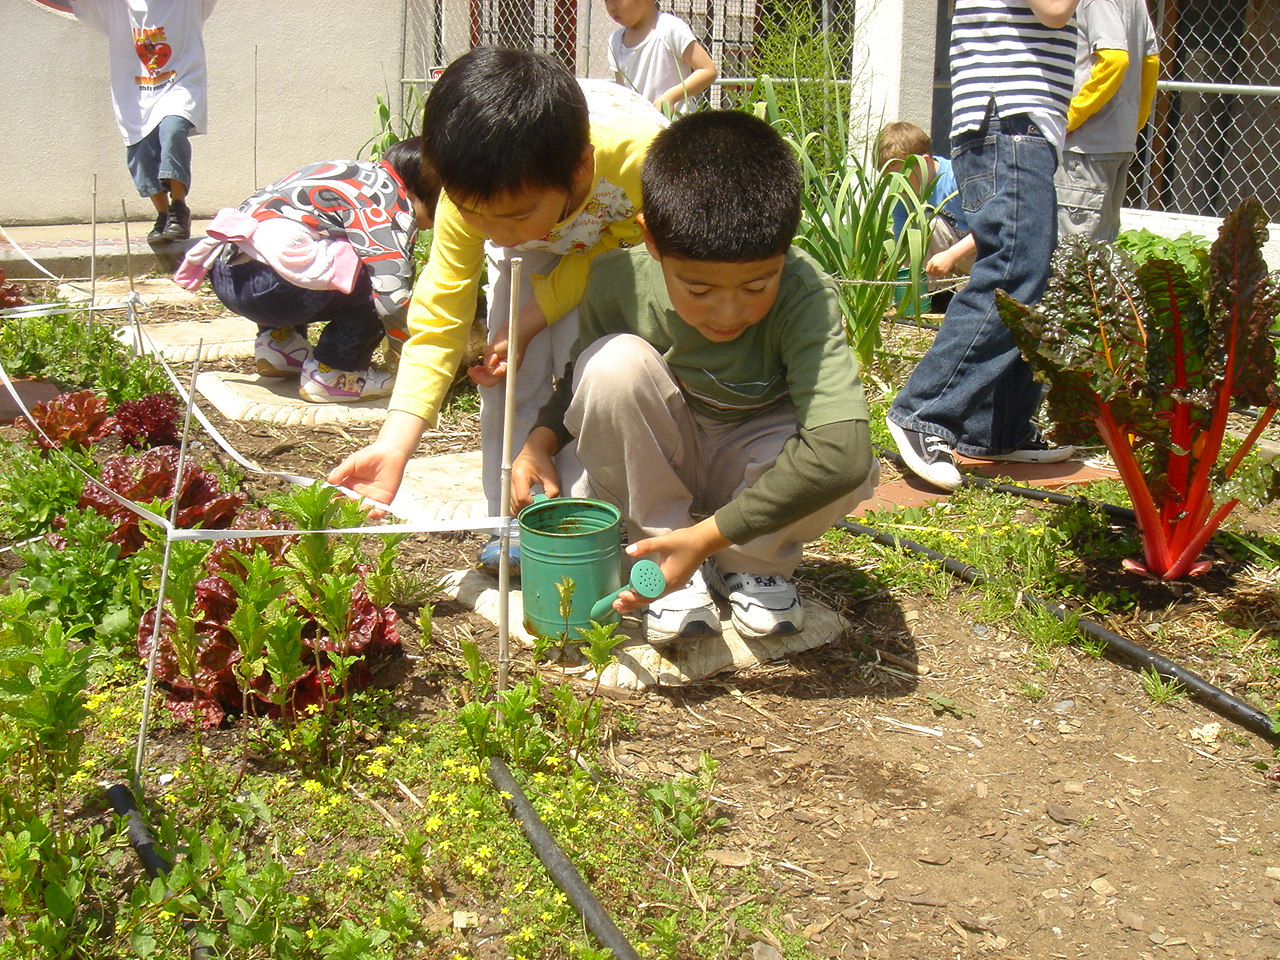 young children gardening at their school